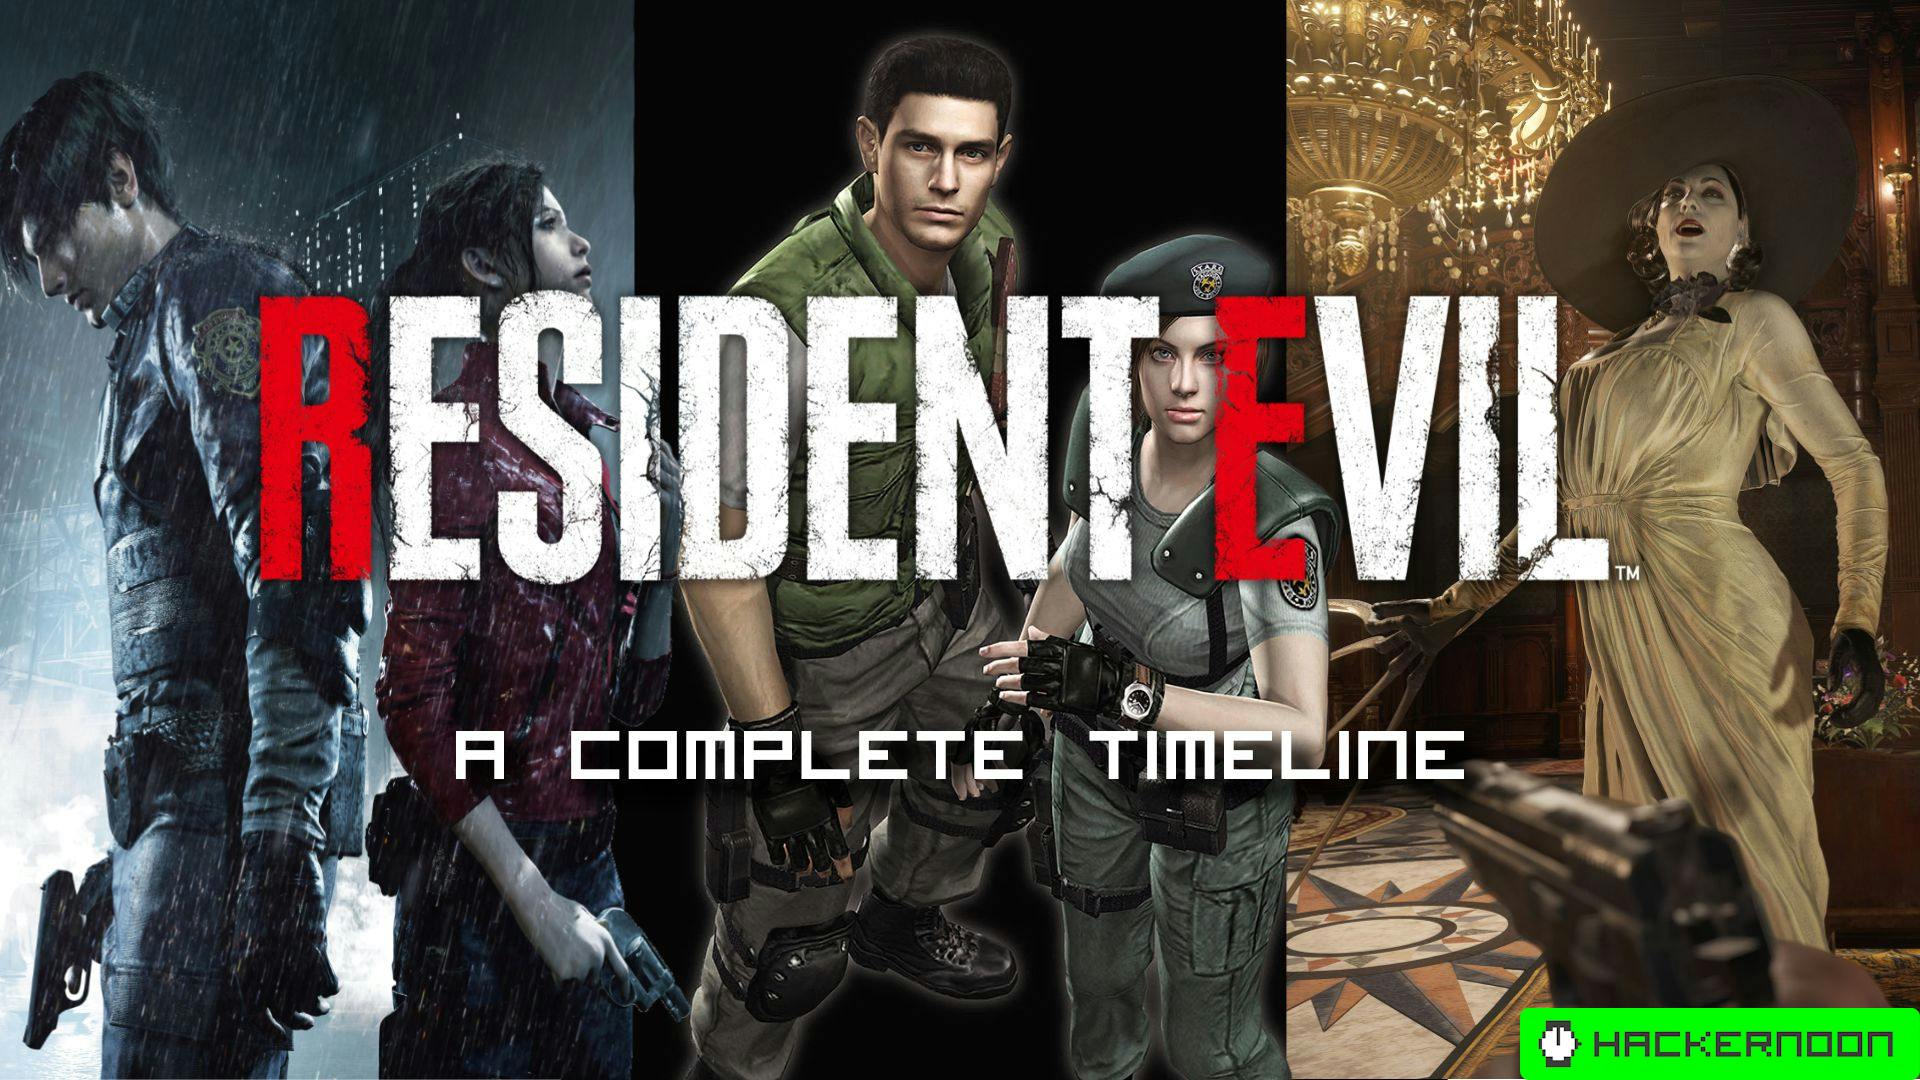 Resident Evil Chronology & Timeline of Media – chronologytrigger